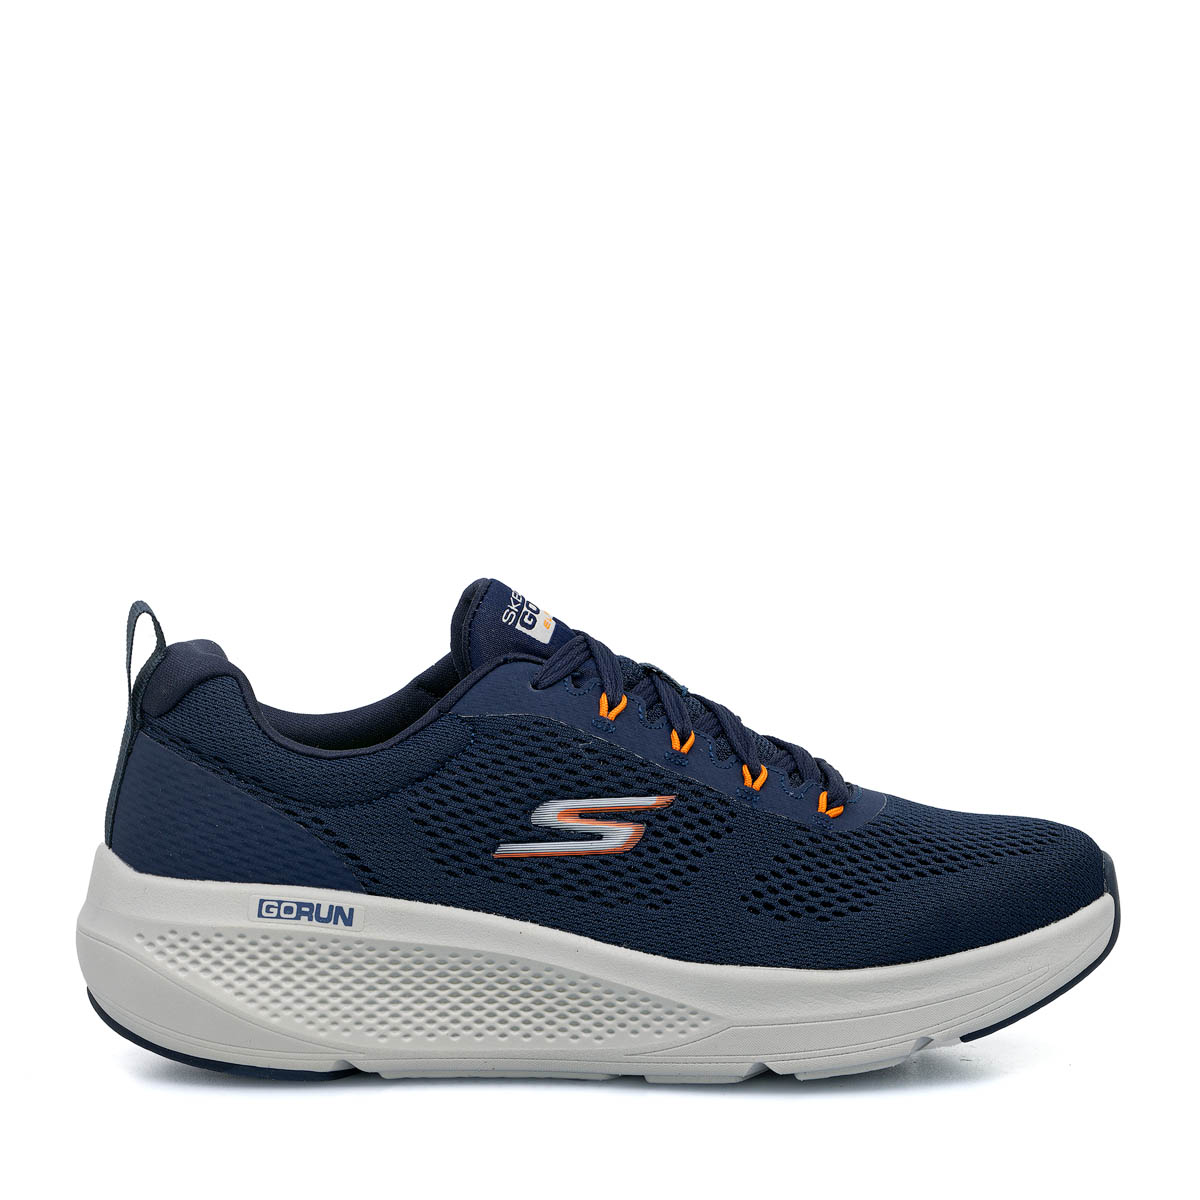 Ανδρικά Ανατομικά Sneakers Skechers GOrun Elevate 220324 Navy Μπλε ΑΝΔ-001929